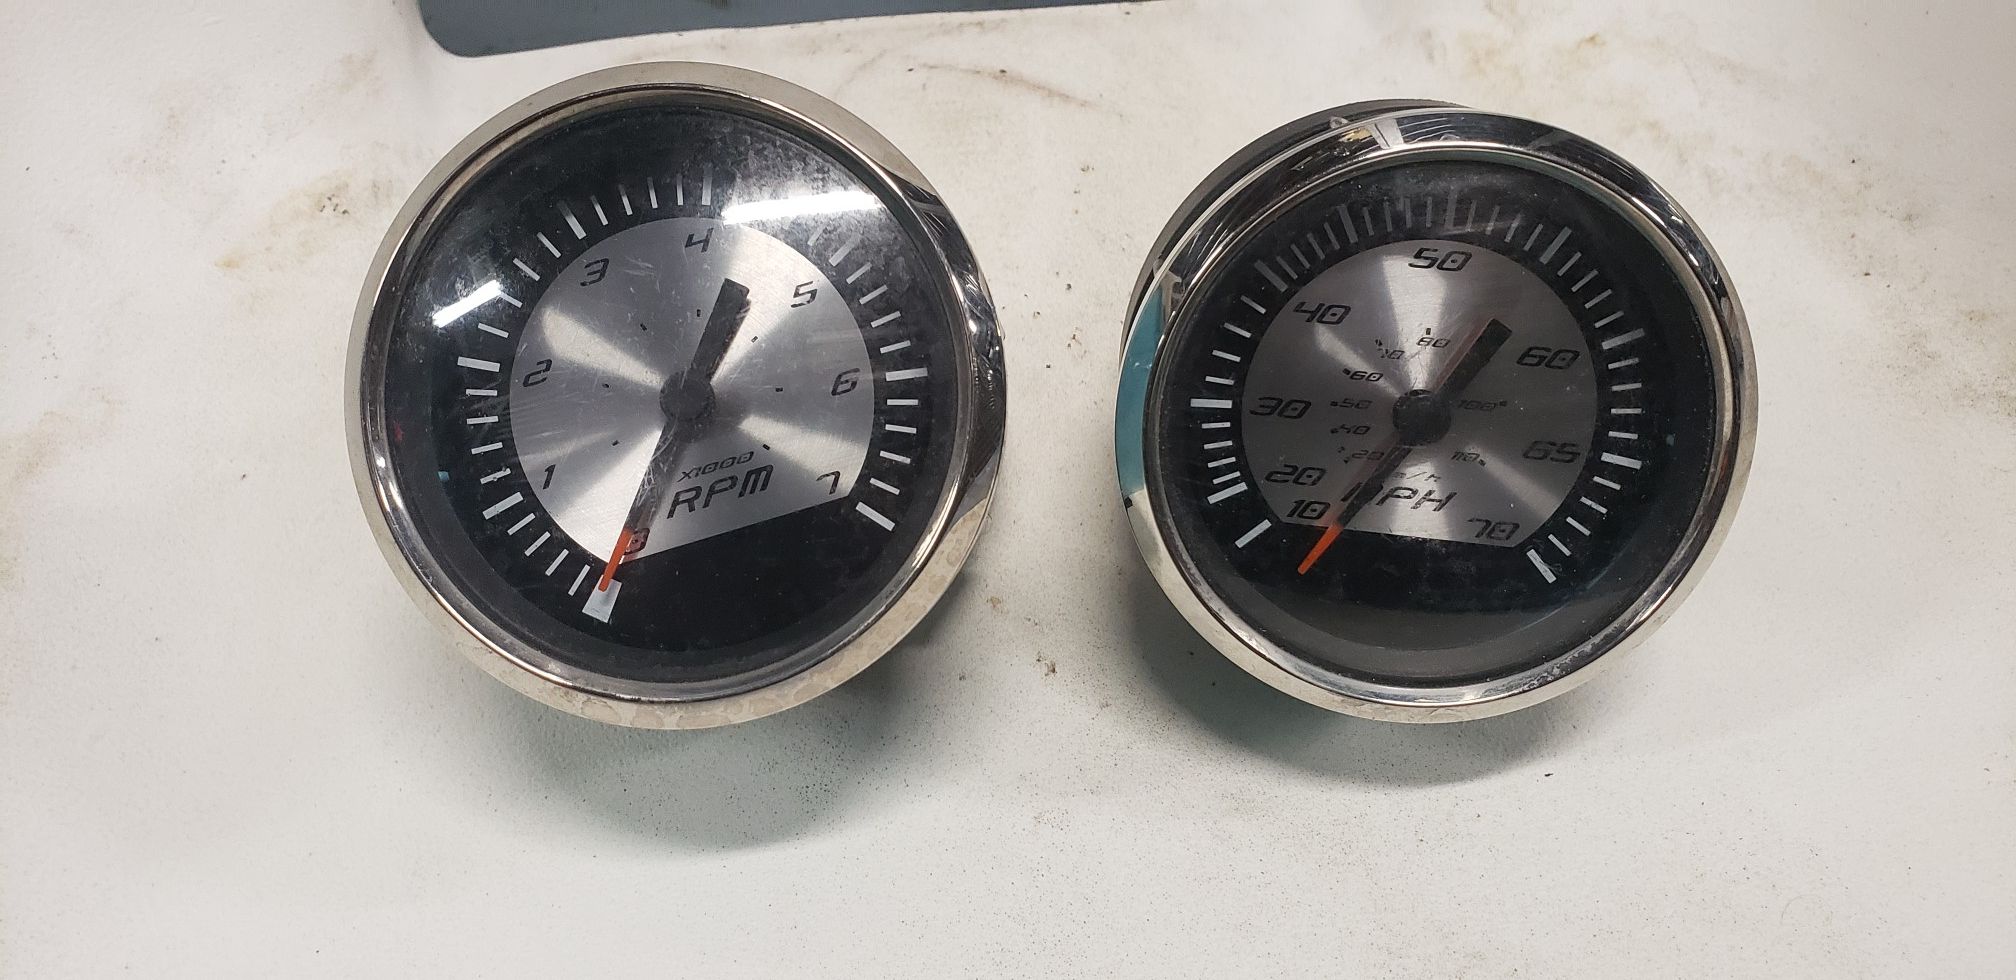 Marine gauges